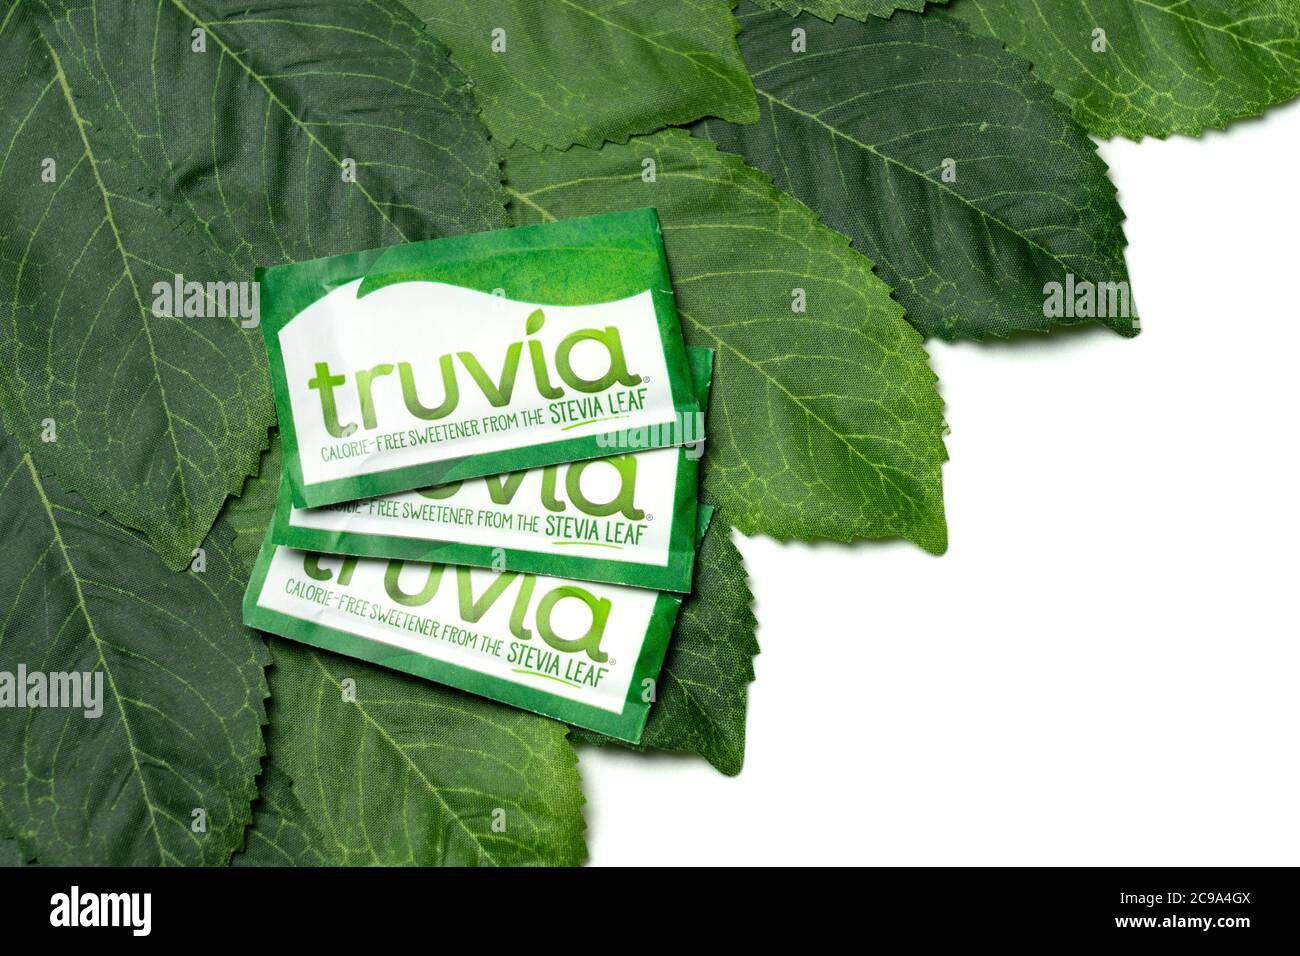 Worcester, PA - 15. Juli 2020: Truvia kalorienfreier Süßstoff wird aus Stevia-Blatt-Extrakt hergestellt und ist als gentechnikfrei zertifiziert. Es enthält keinen Zucker oder Calori Stockfoto